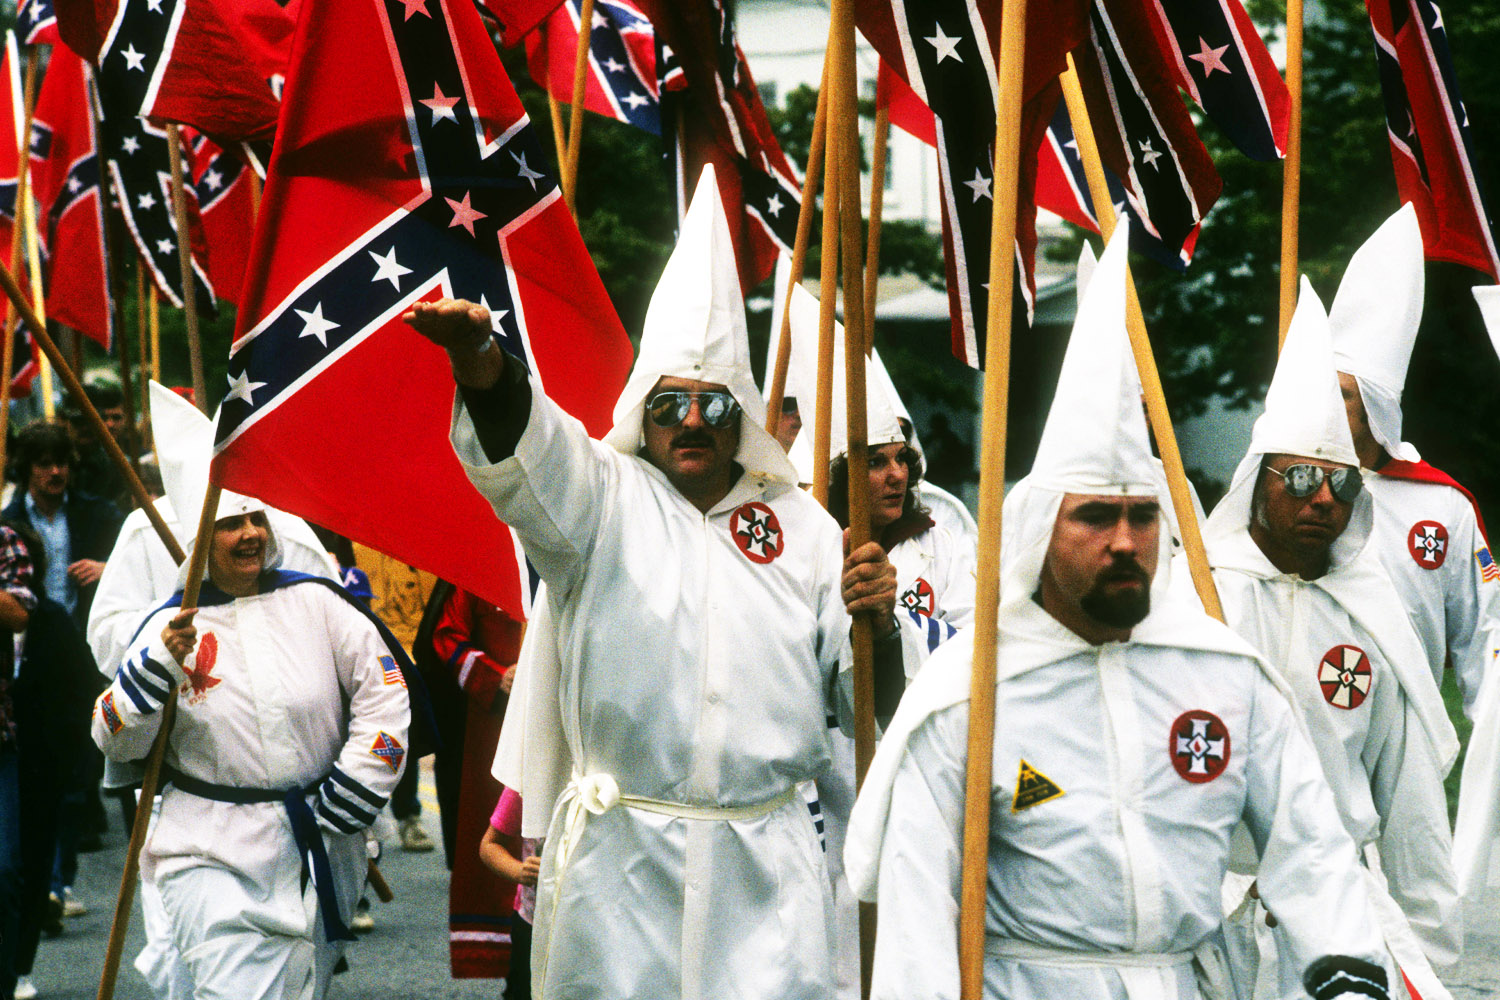 El Ku Klux Klan anima a acabar con los gays para “parar el sida” y los califica de “repugnantes e inhumanos”